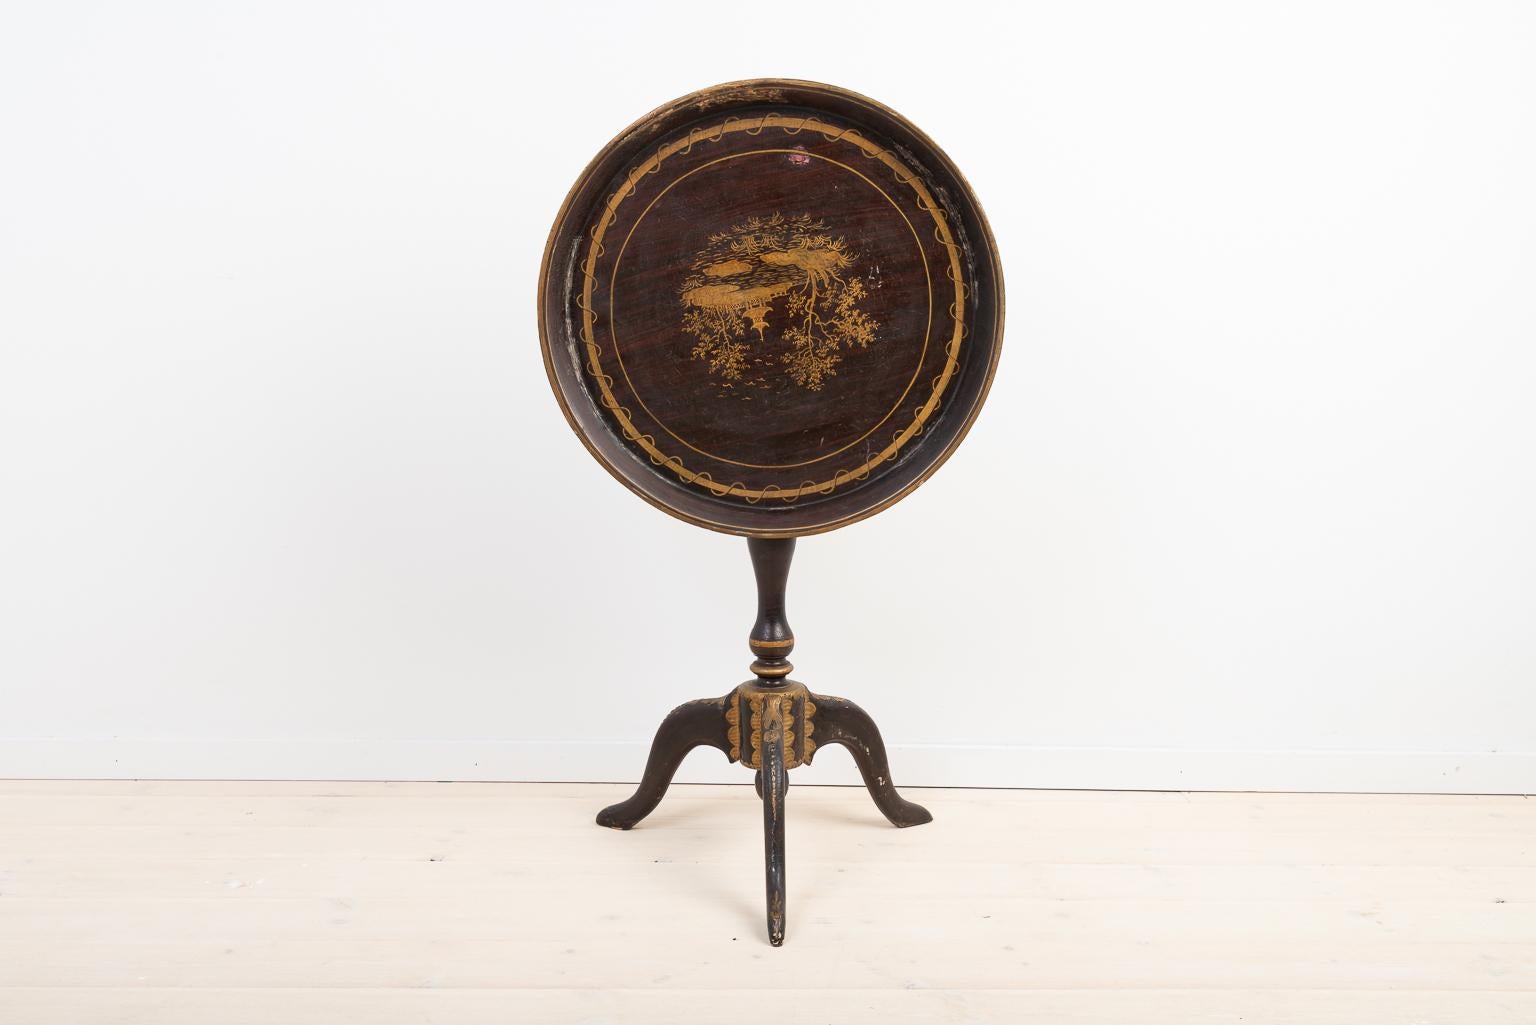 Table à plateau suédoise de la fin du XVIIIe siècle. La table est décorée de sculptures en bois. Un détail amusant est que la peinture sur le plateau de la table est à l'envers lorsqu'elle est repliée. La table est légèrement de travers - voir les